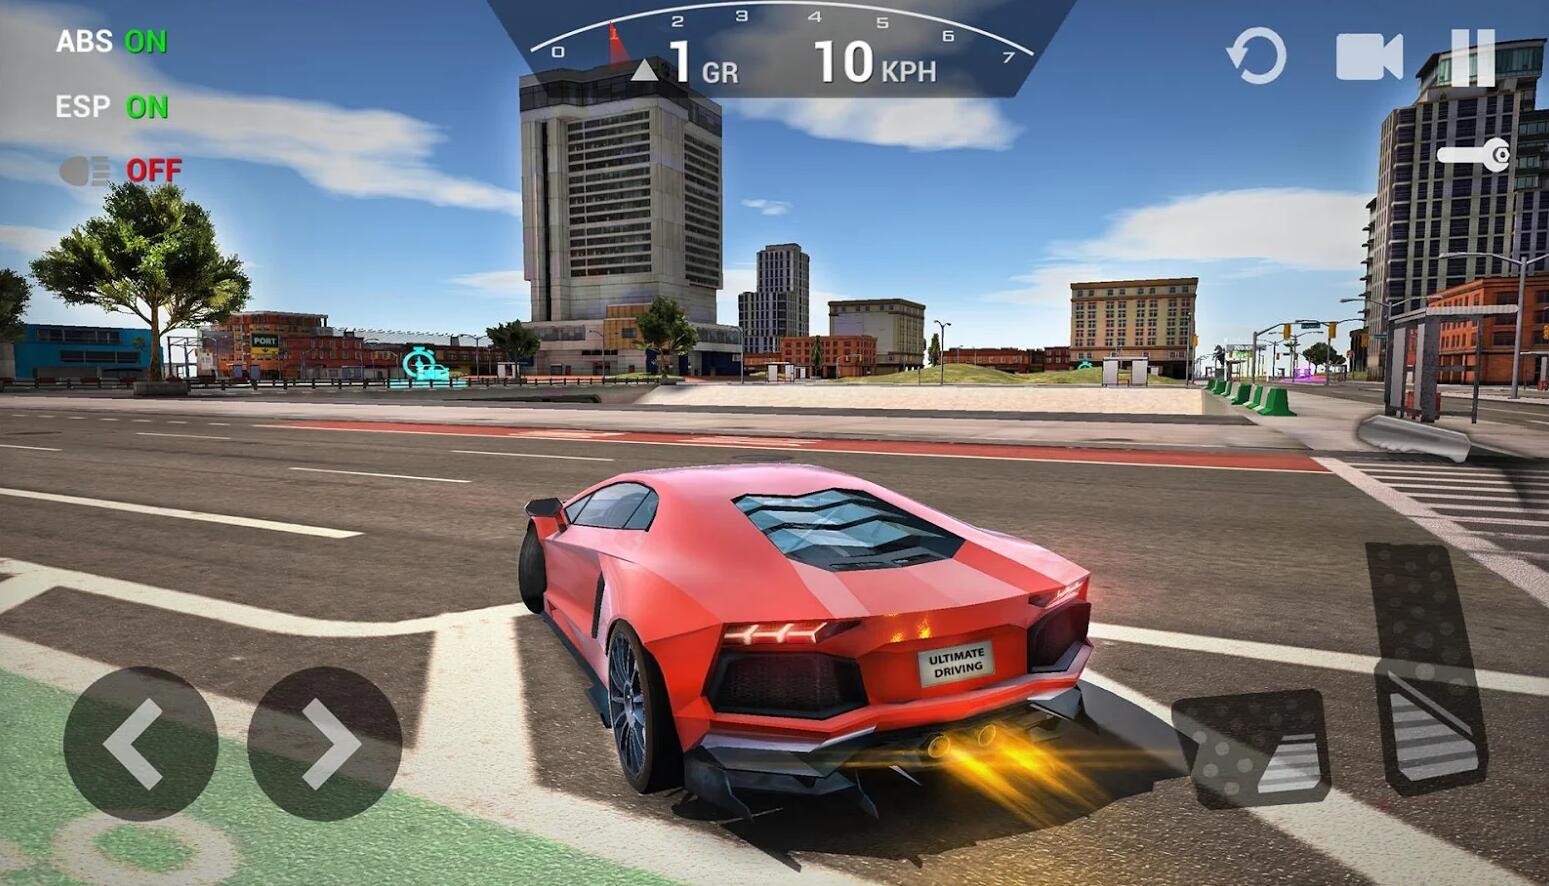 游戏截图《终极汽车驾驶模拟器 》视频分享游戏视频游戏改进!